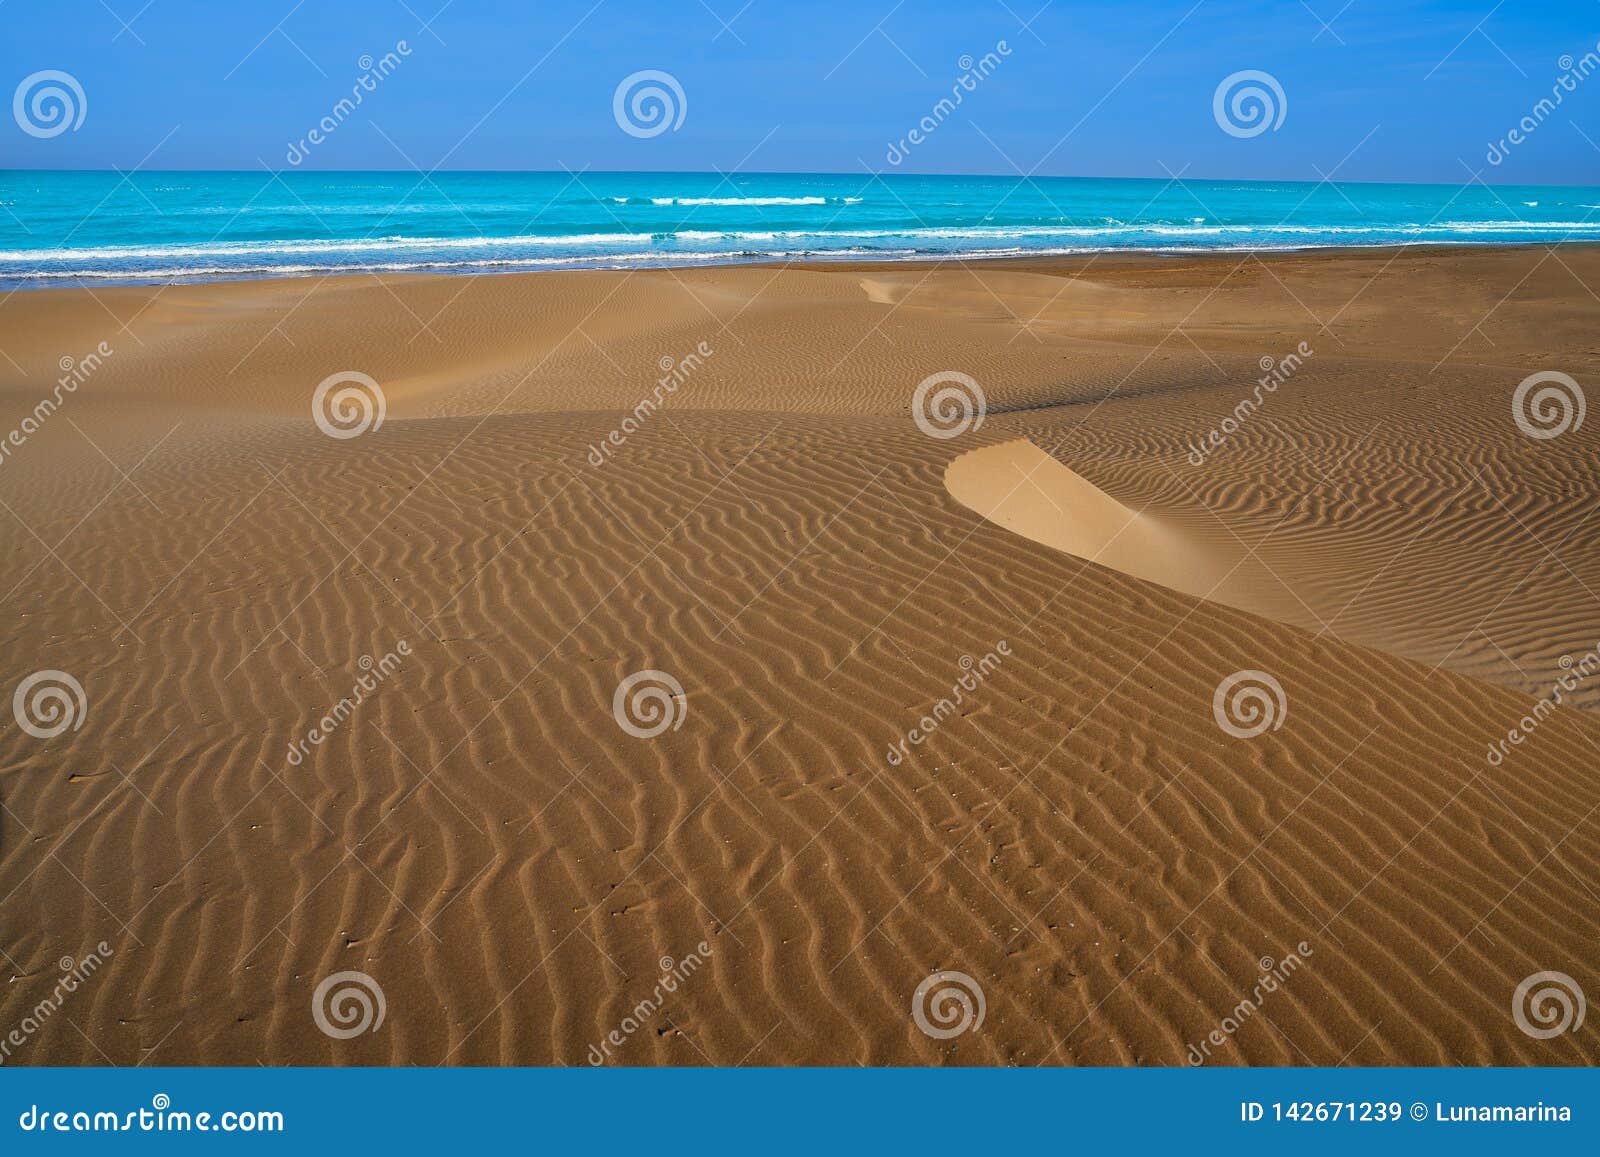 delta del ebro beach punta del fangar